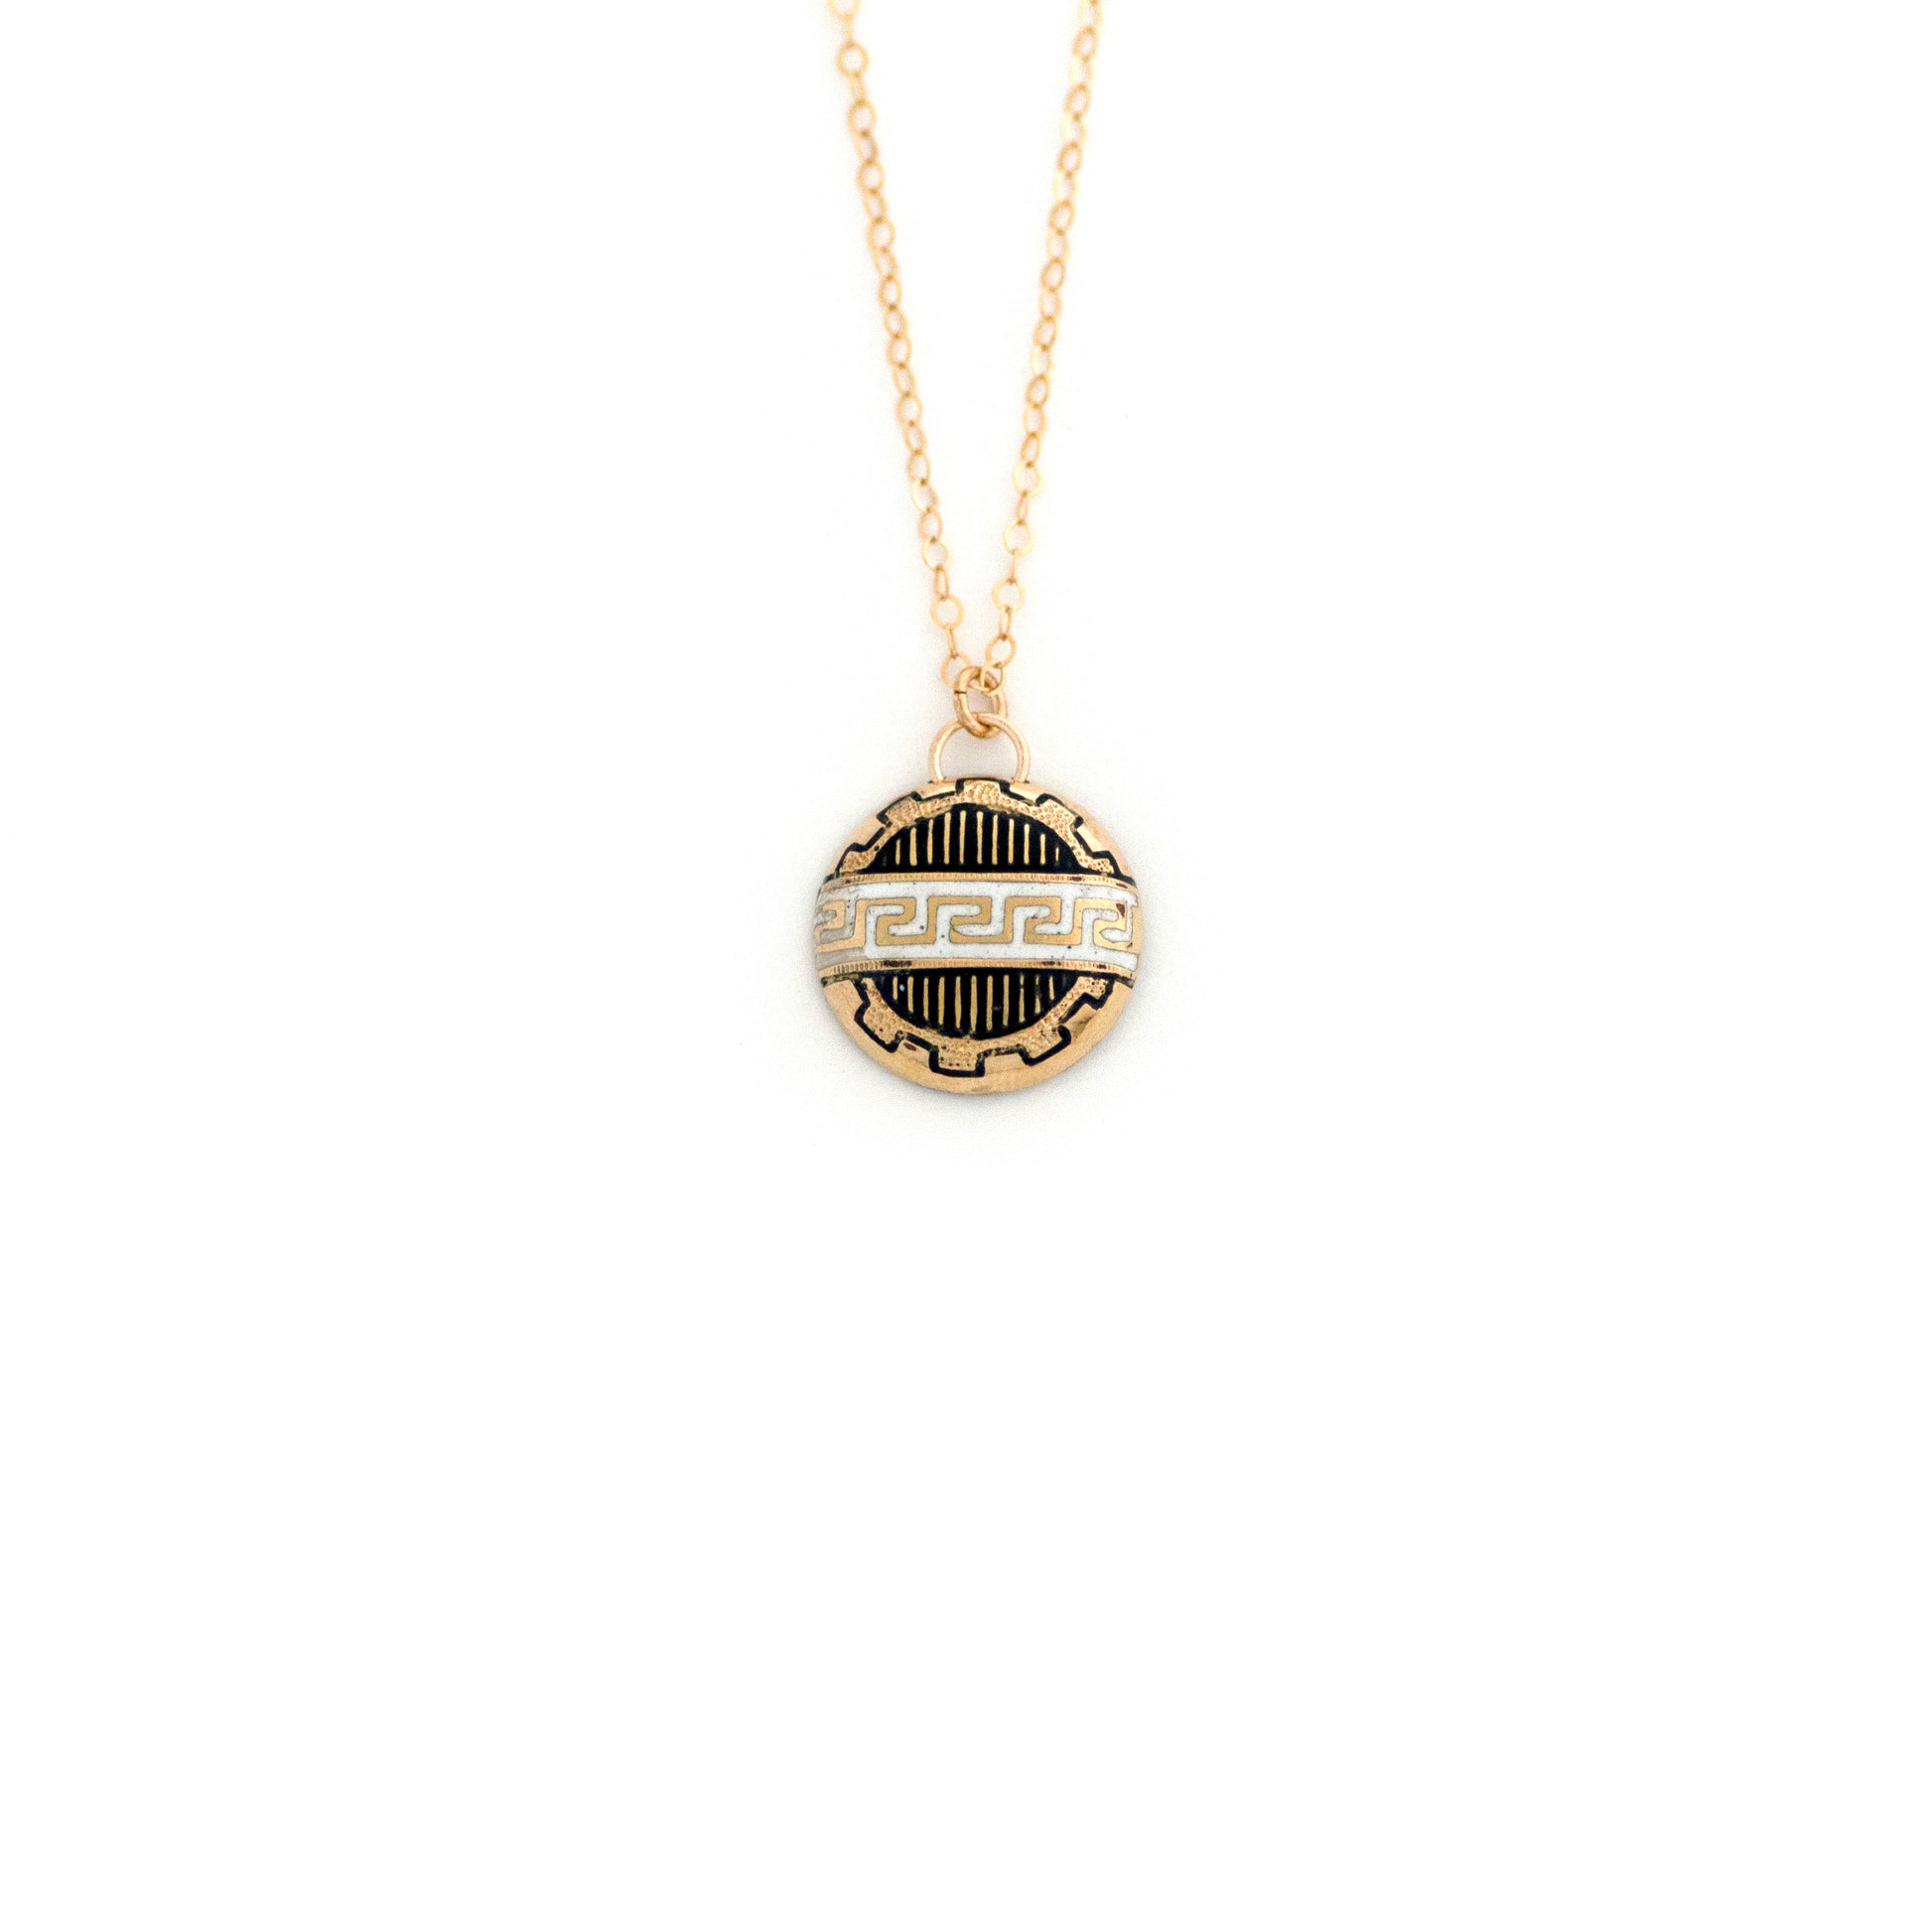 Black and white enamel Greek key meander gold filled brooch conversion necklace